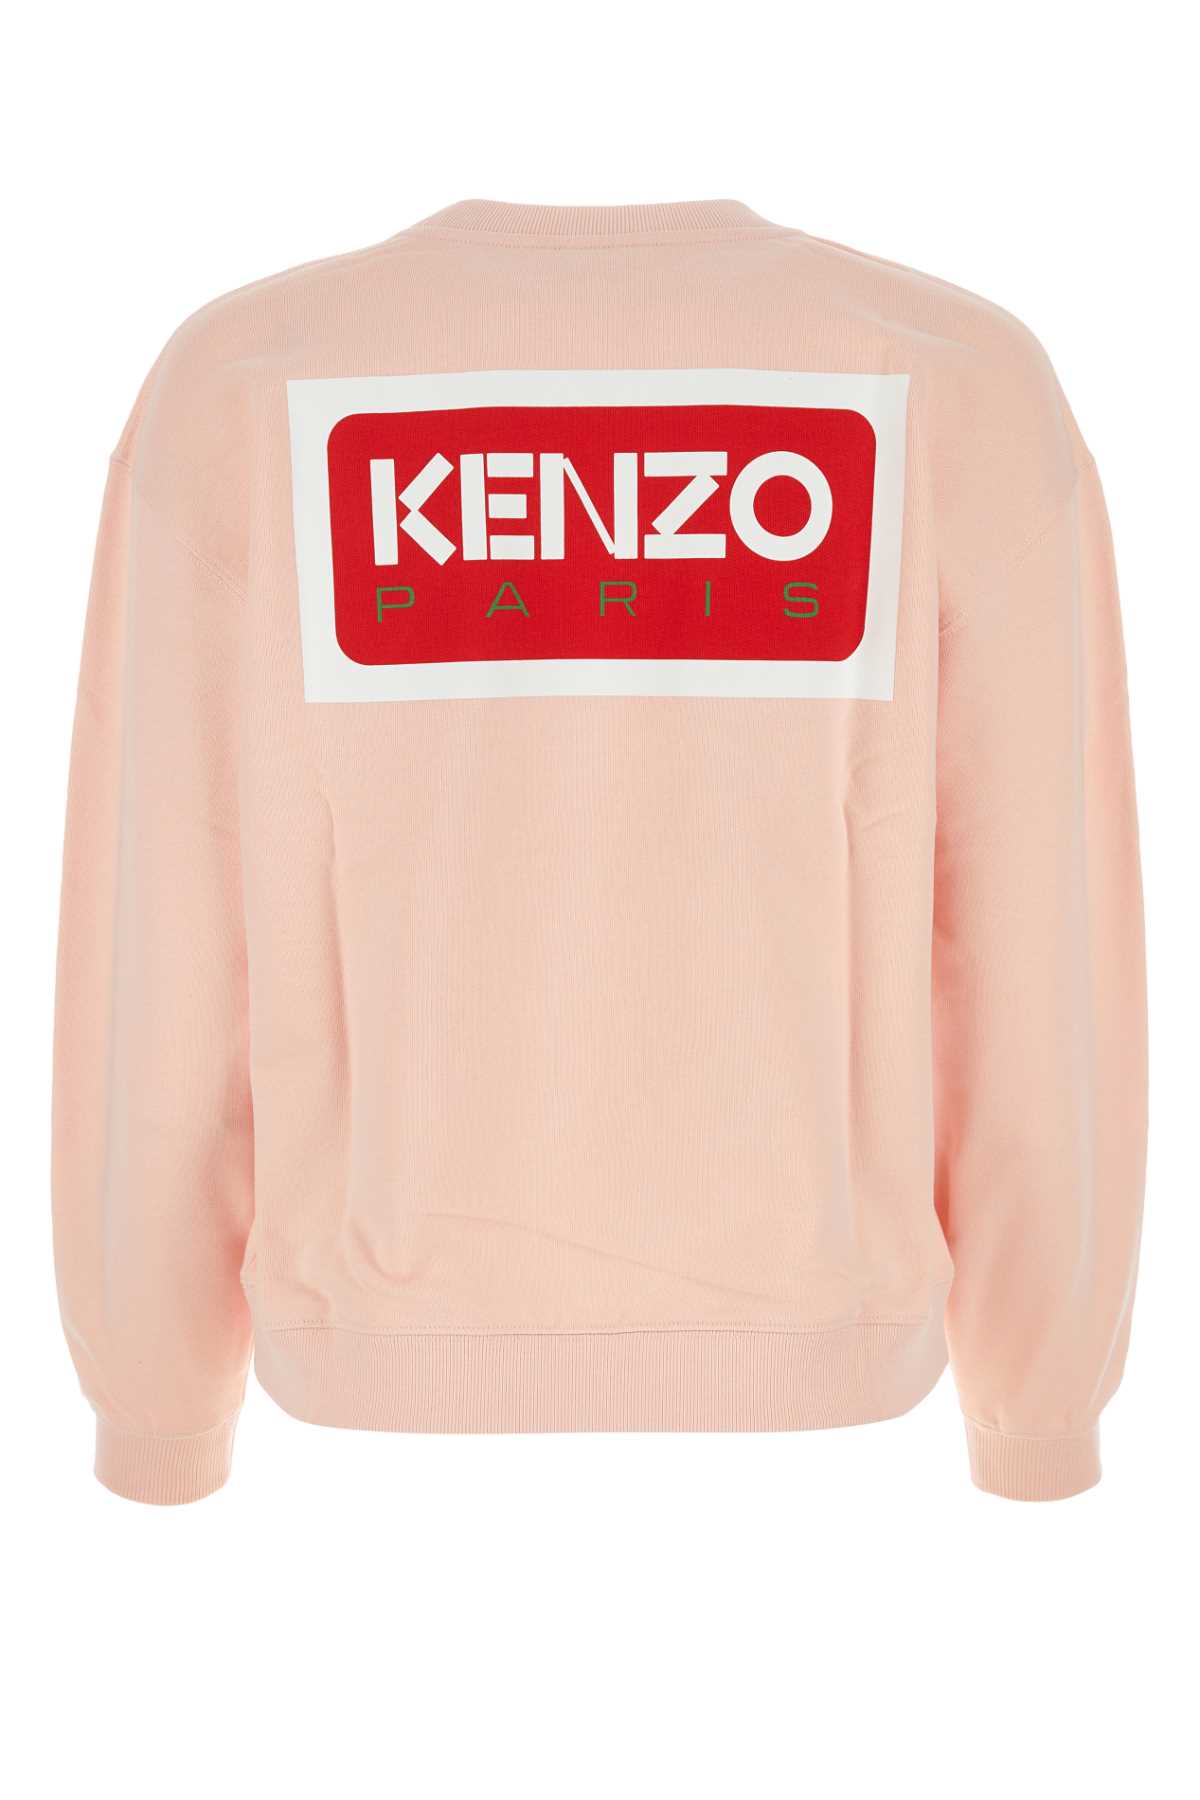 Kenzo Pastel Pink Cotton Boke Flower Sweatshirt In Fadedpink